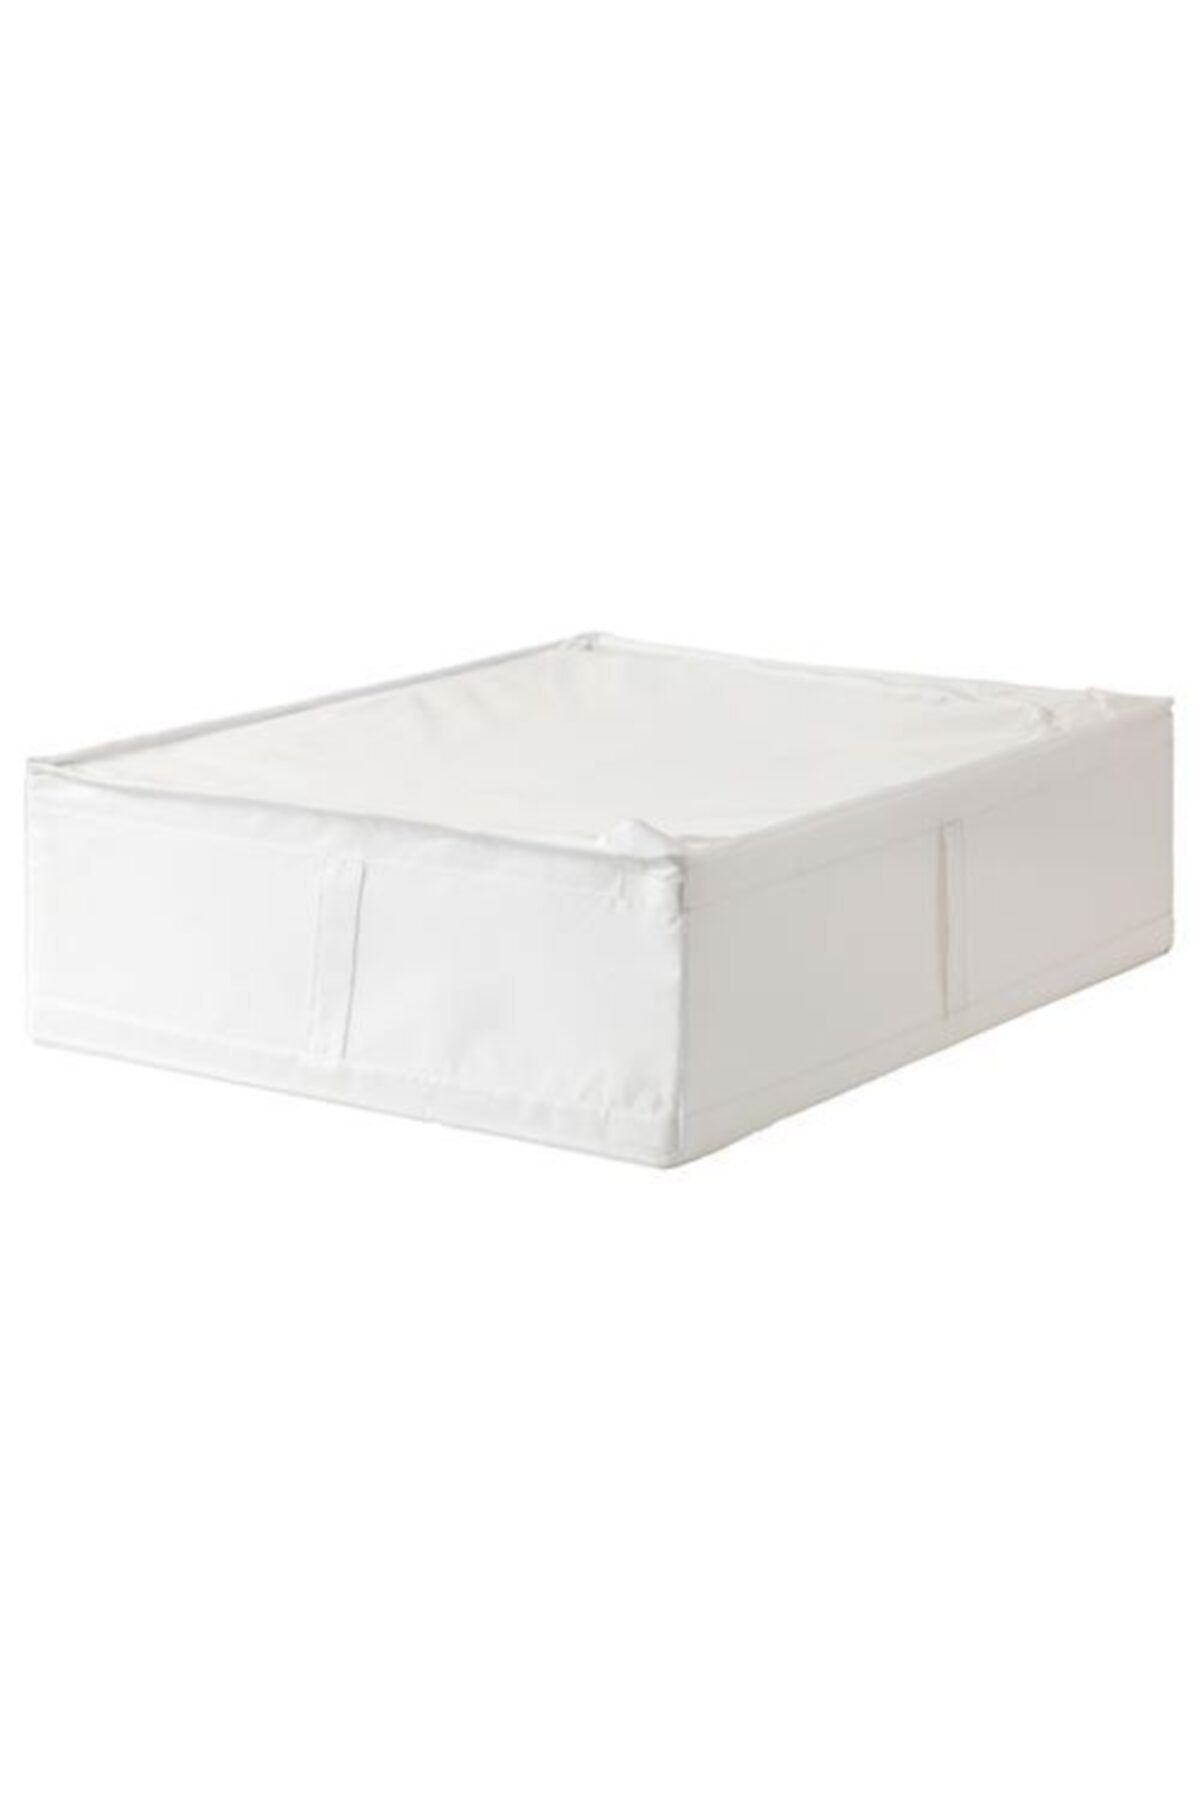 IKEA Skubb 69x55x19 Cm Saklama Düzenleme Kutusu Beyaz - Kutu Hurç